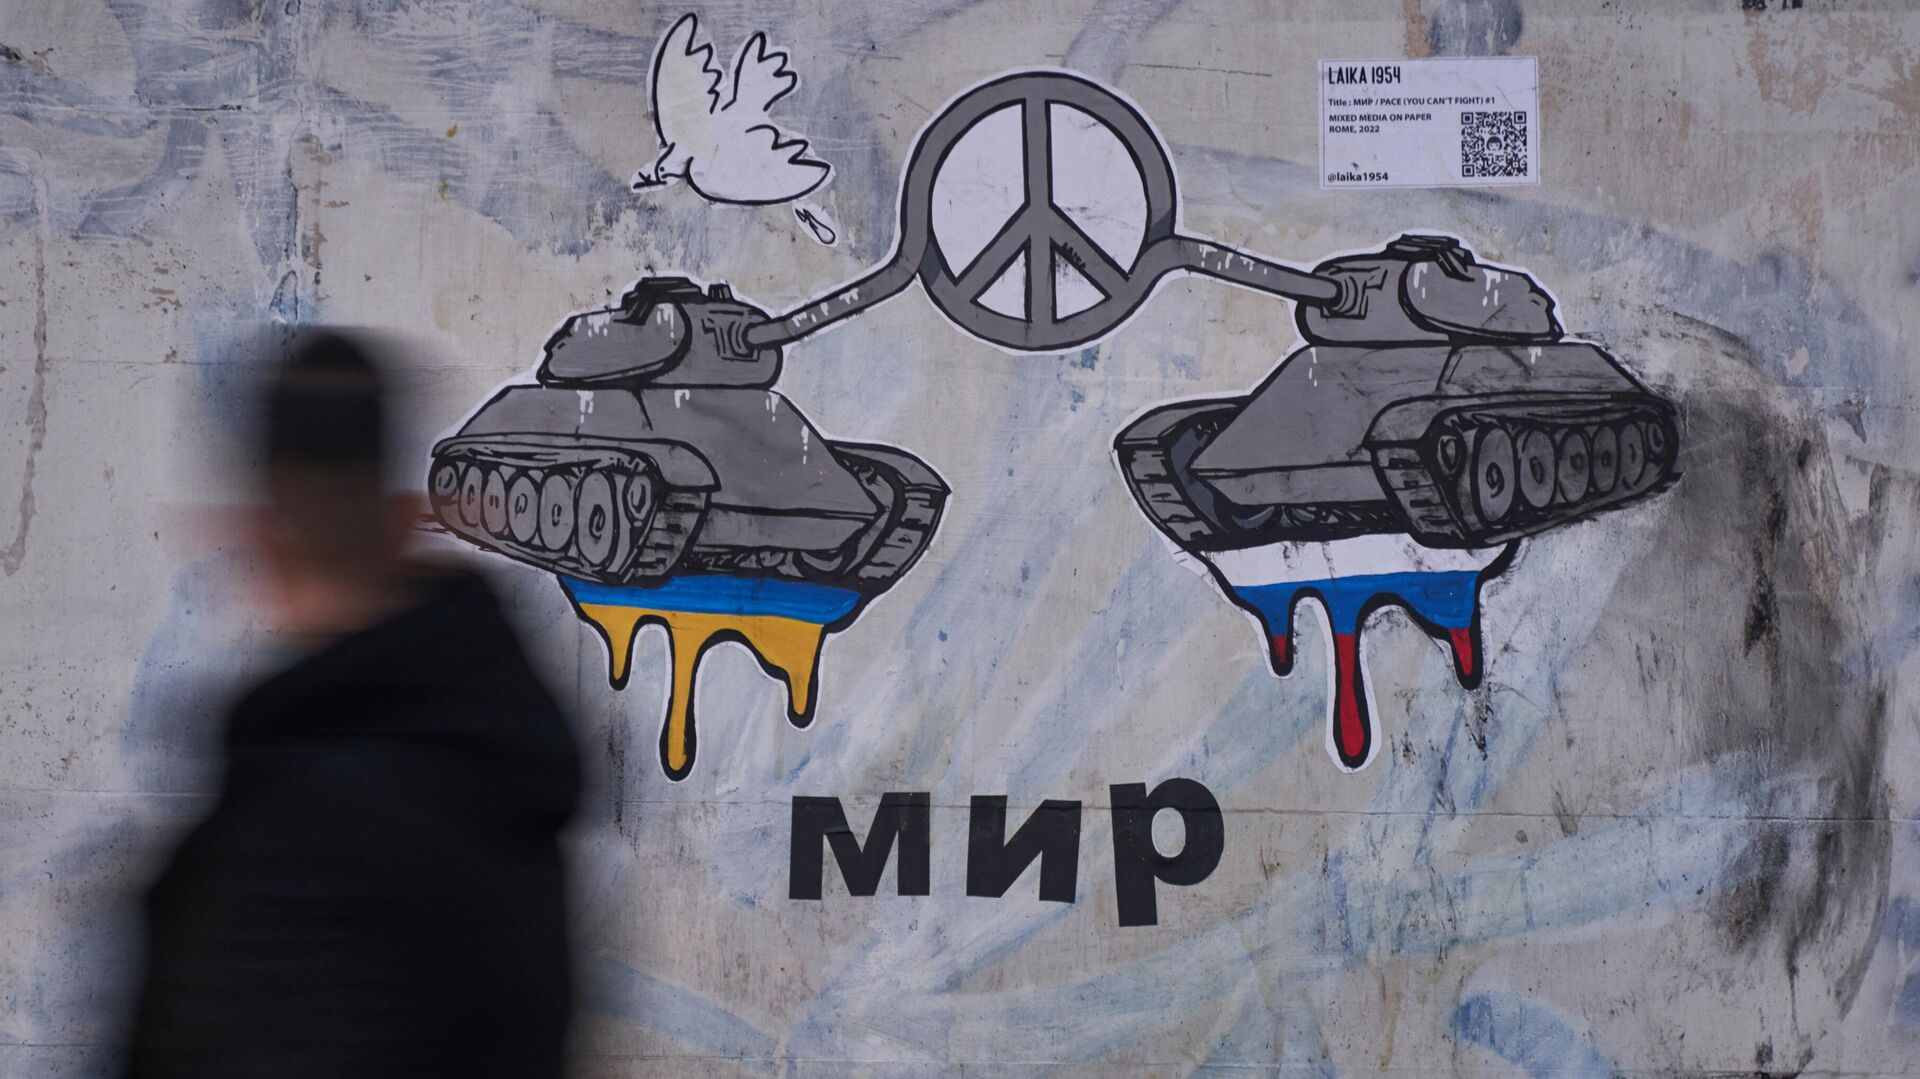 Граффити о мире между Россией и Украиной появилось в Риме - ИноСМИ, 1920, 22.02.2022